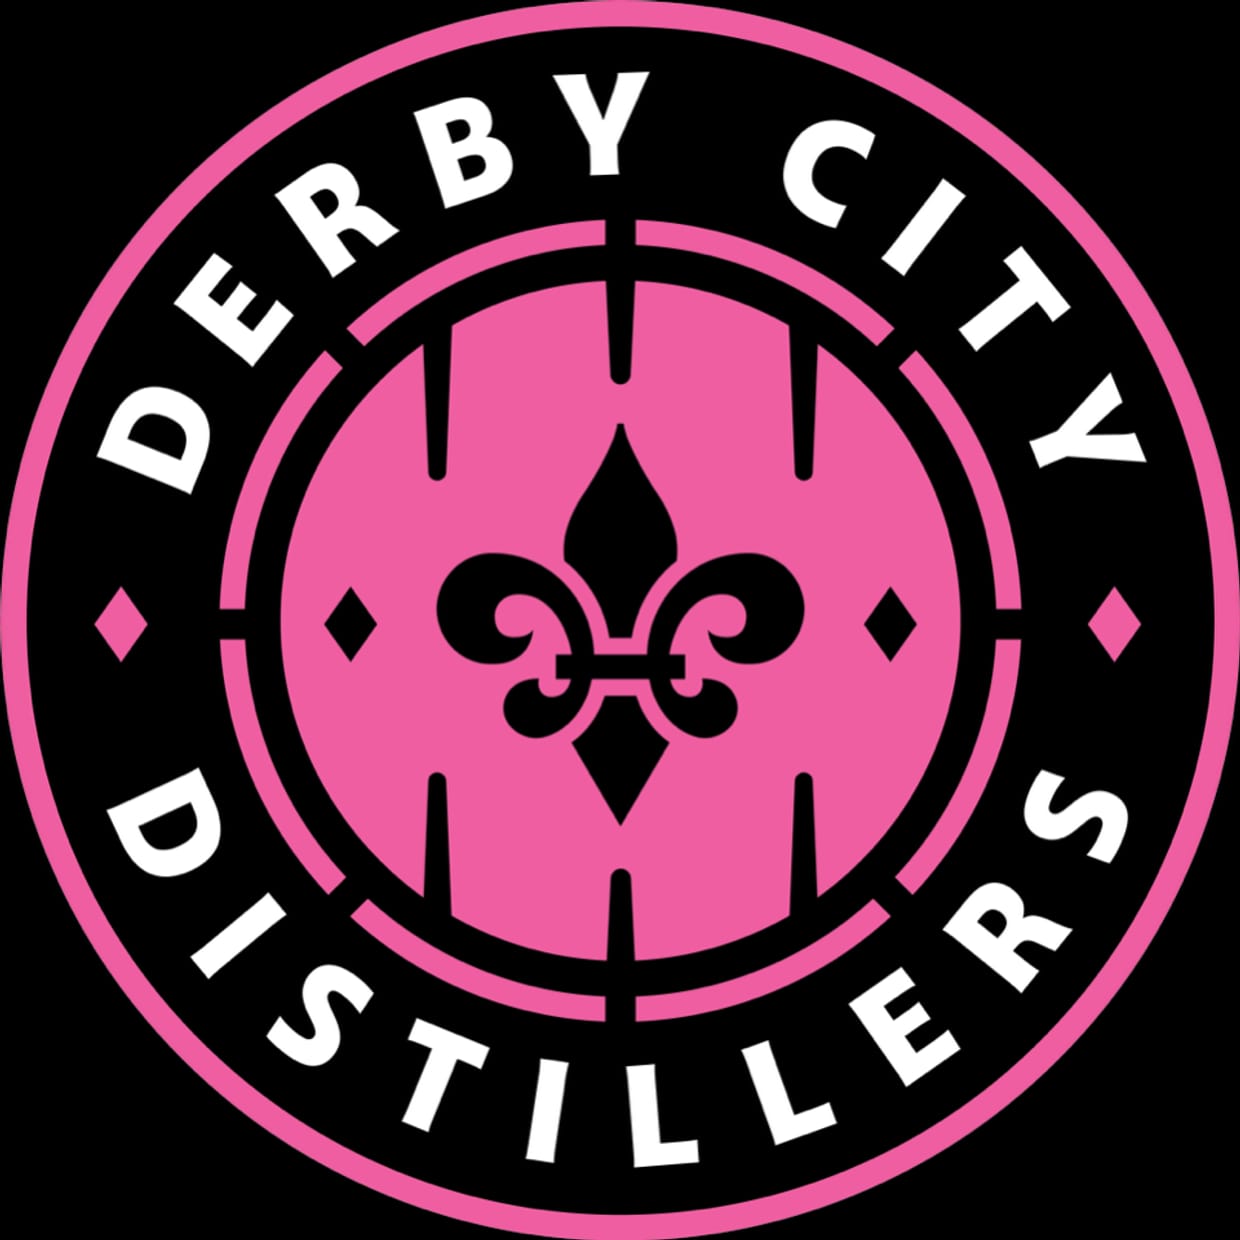 Derby City Distillers v. St. Louis Griffins